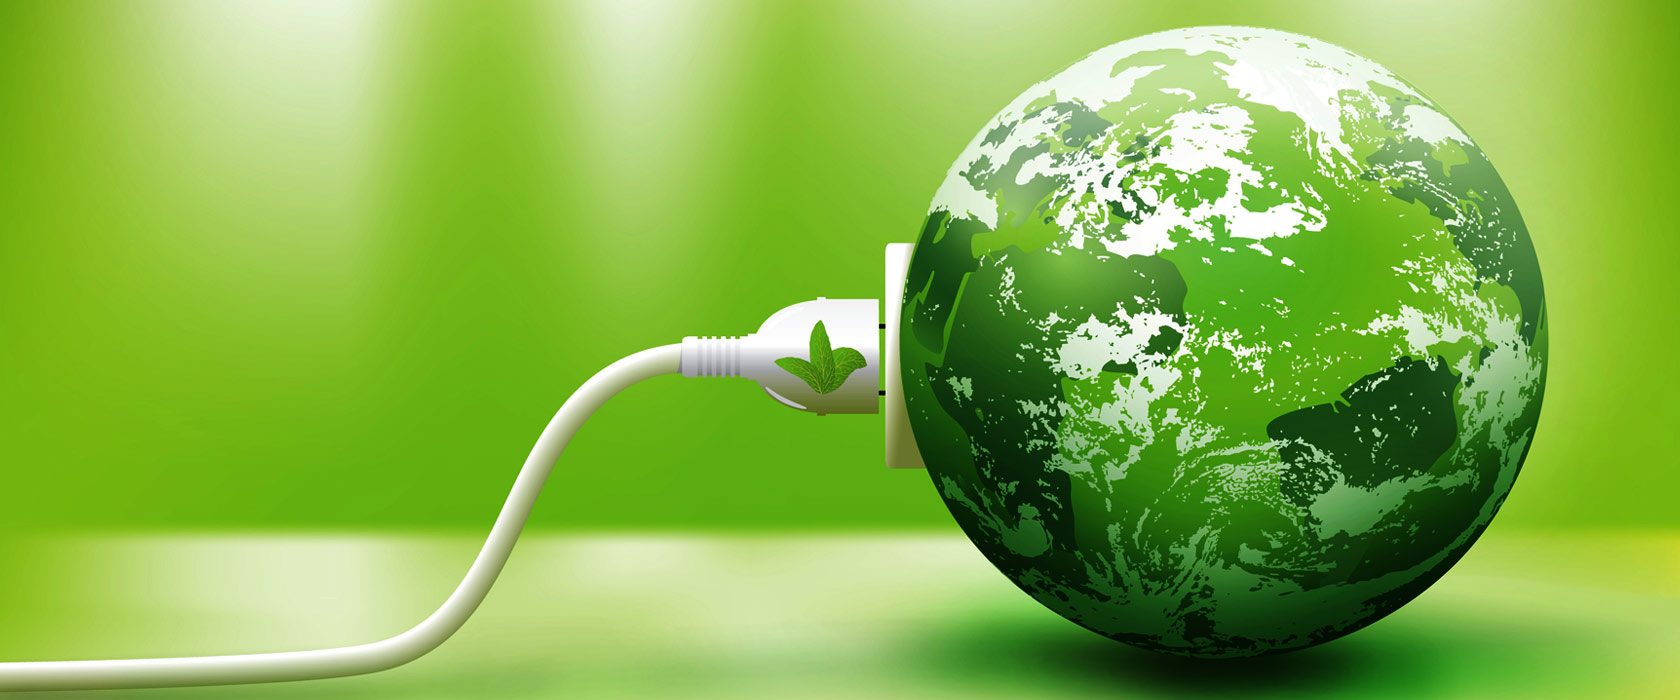 Green power Market,